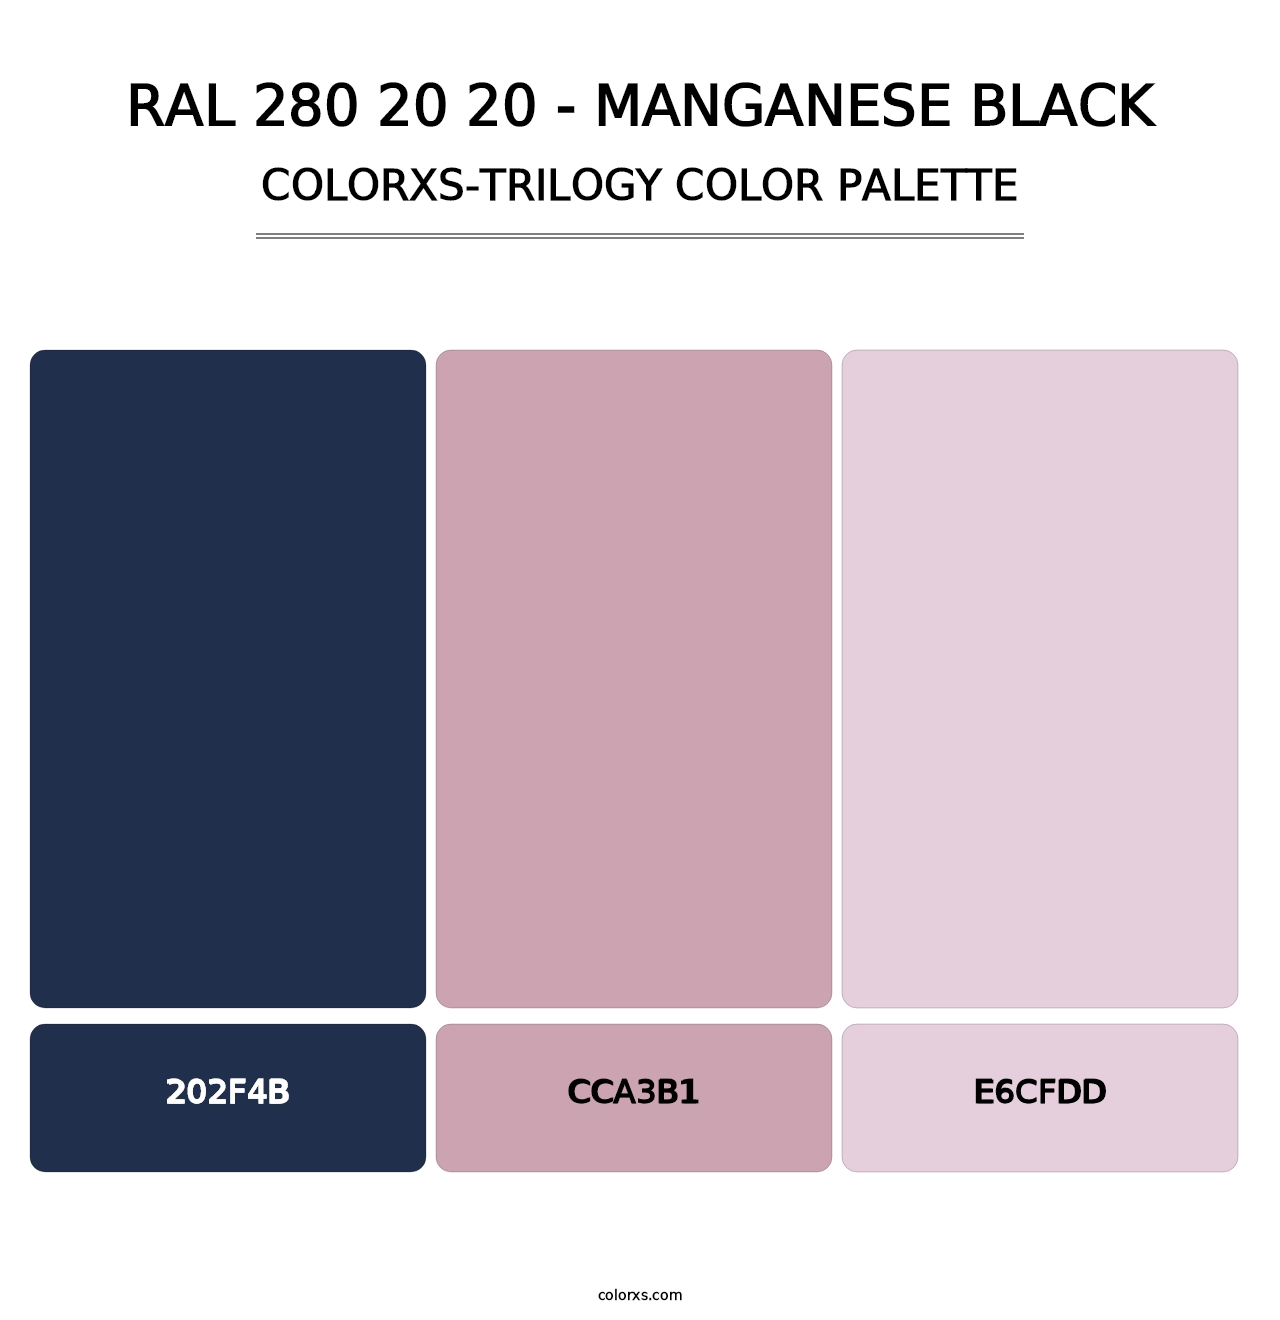 RAL 280 20 20 - Manganese Black - Colorxs Trilogy Palette